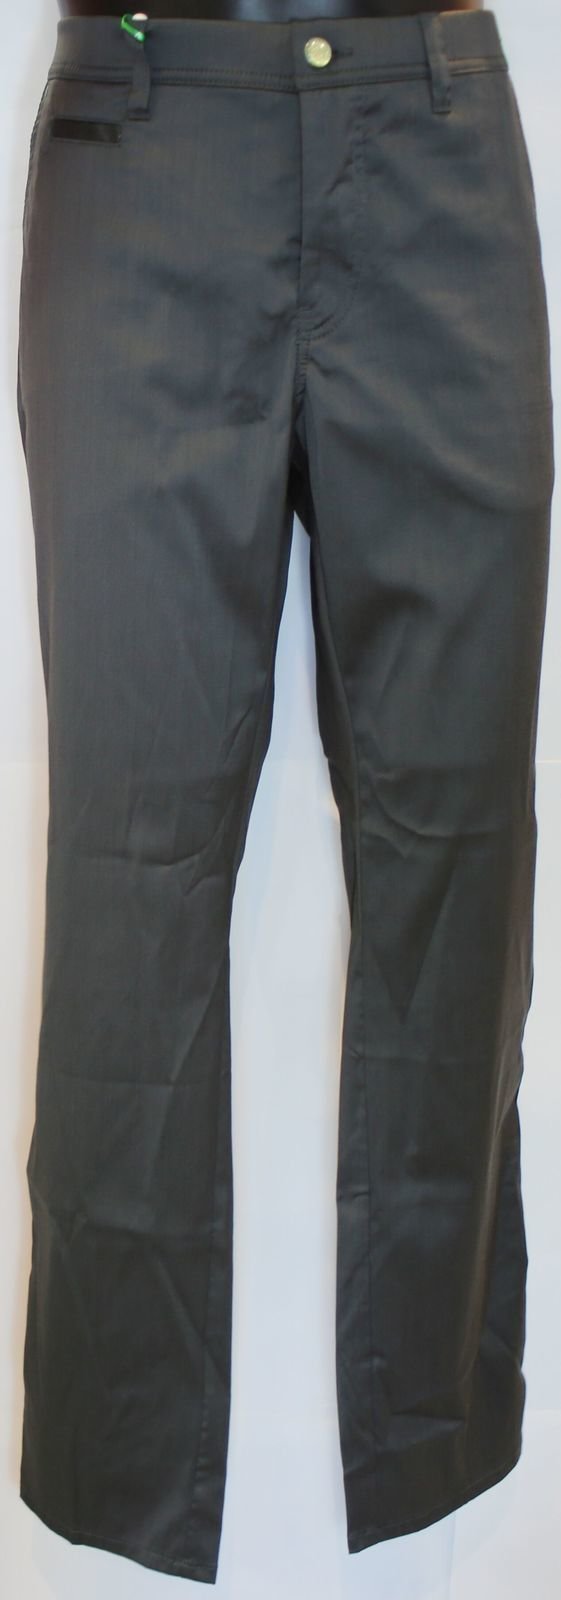 Spodnie Alberto Rookie Ceramica Super Light Spodnie Męskie Dark Grey 98